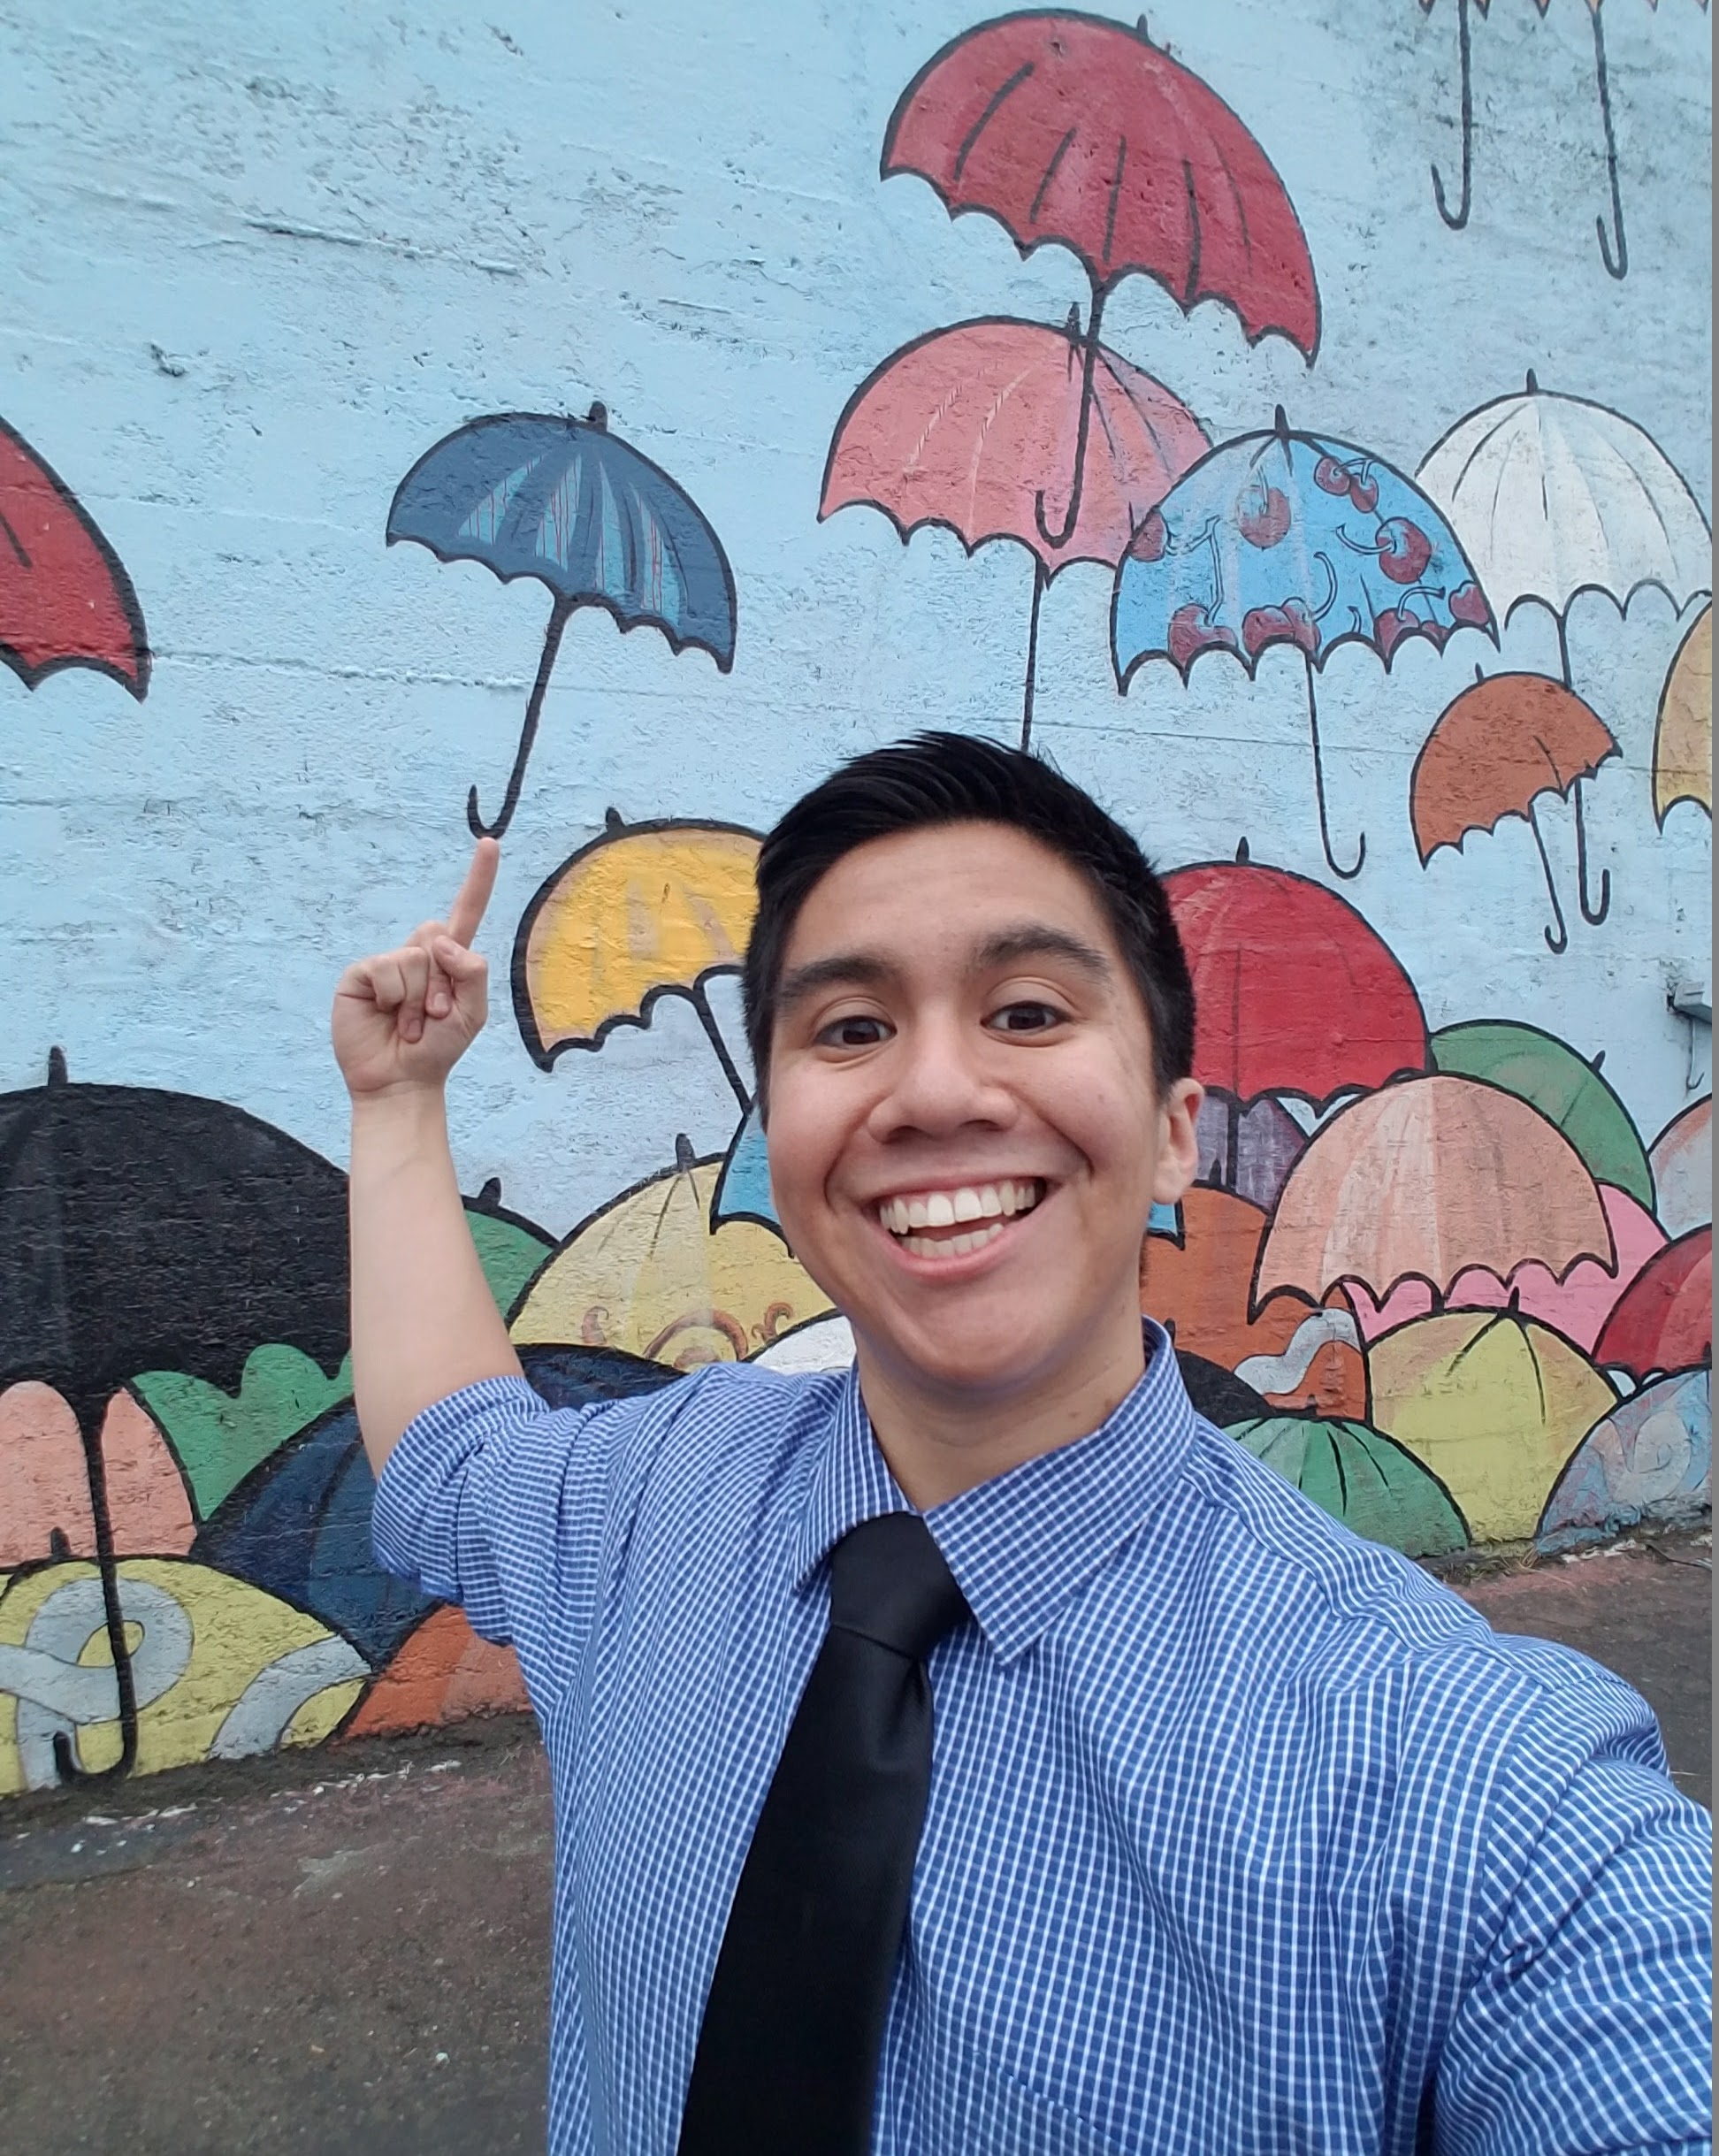 Selfie Spot - Umbrella Wall